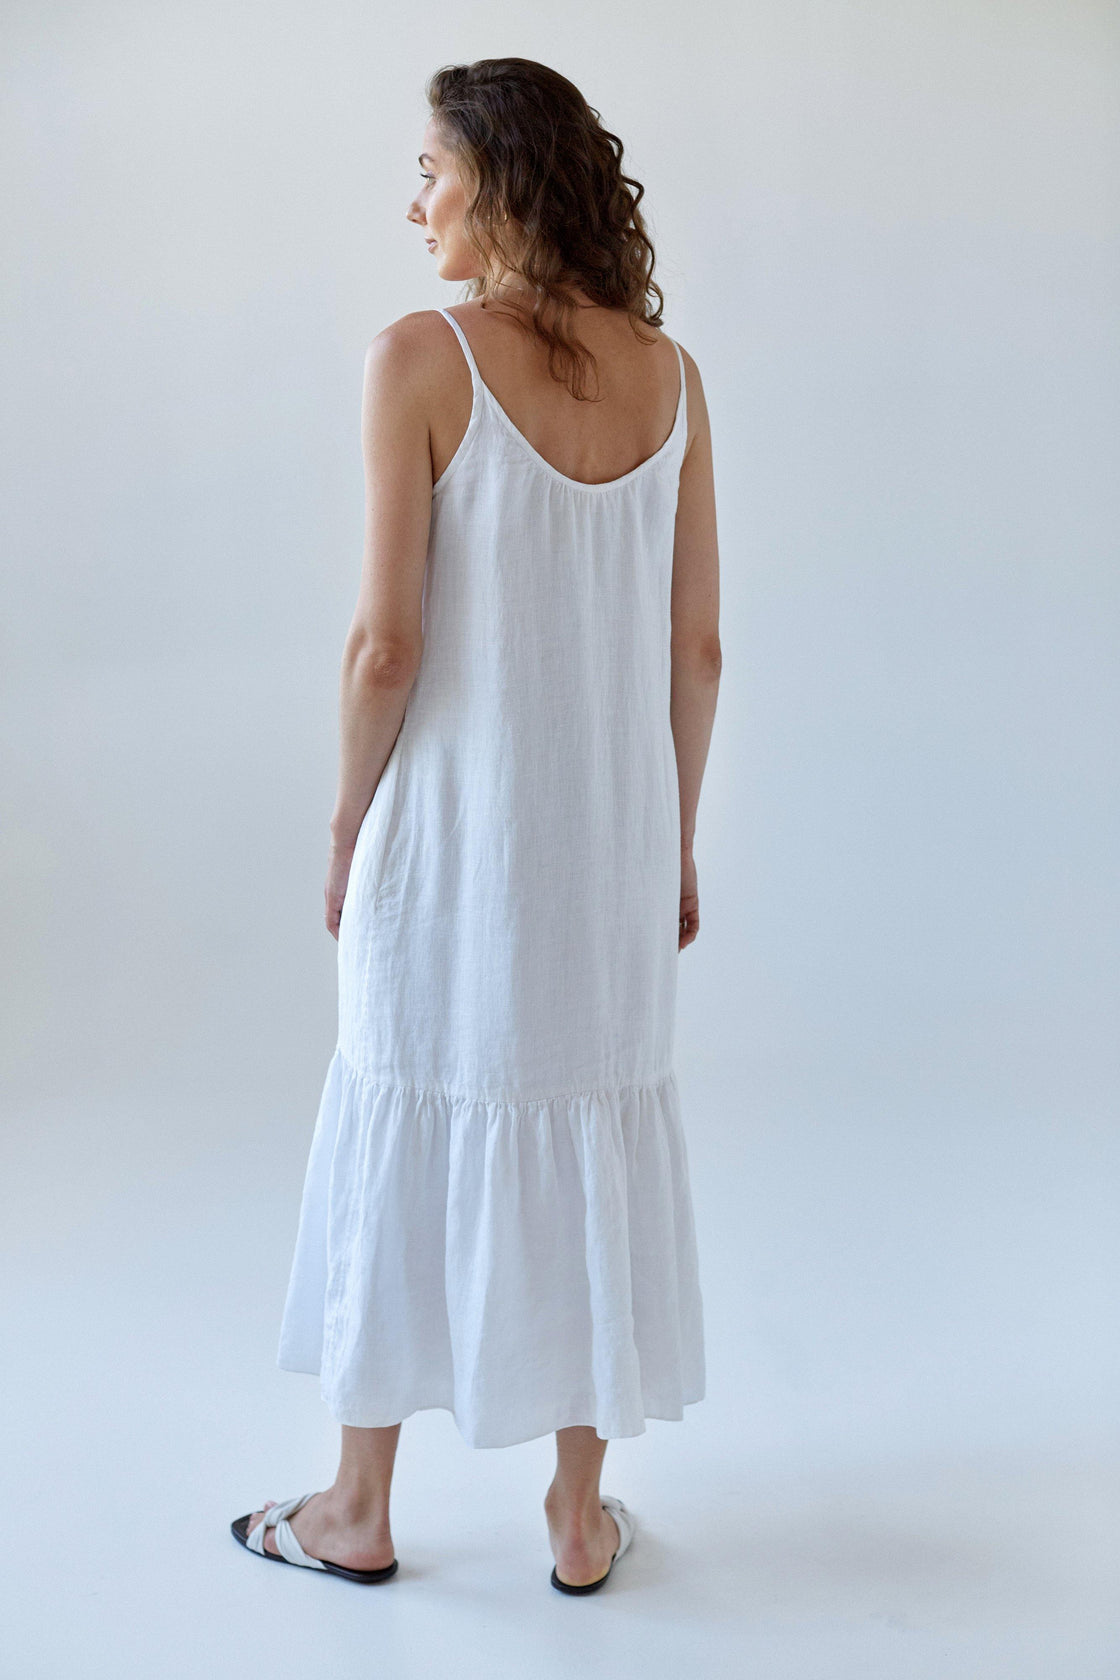 White linen dress with ruffle hem - Manufacture de Lin